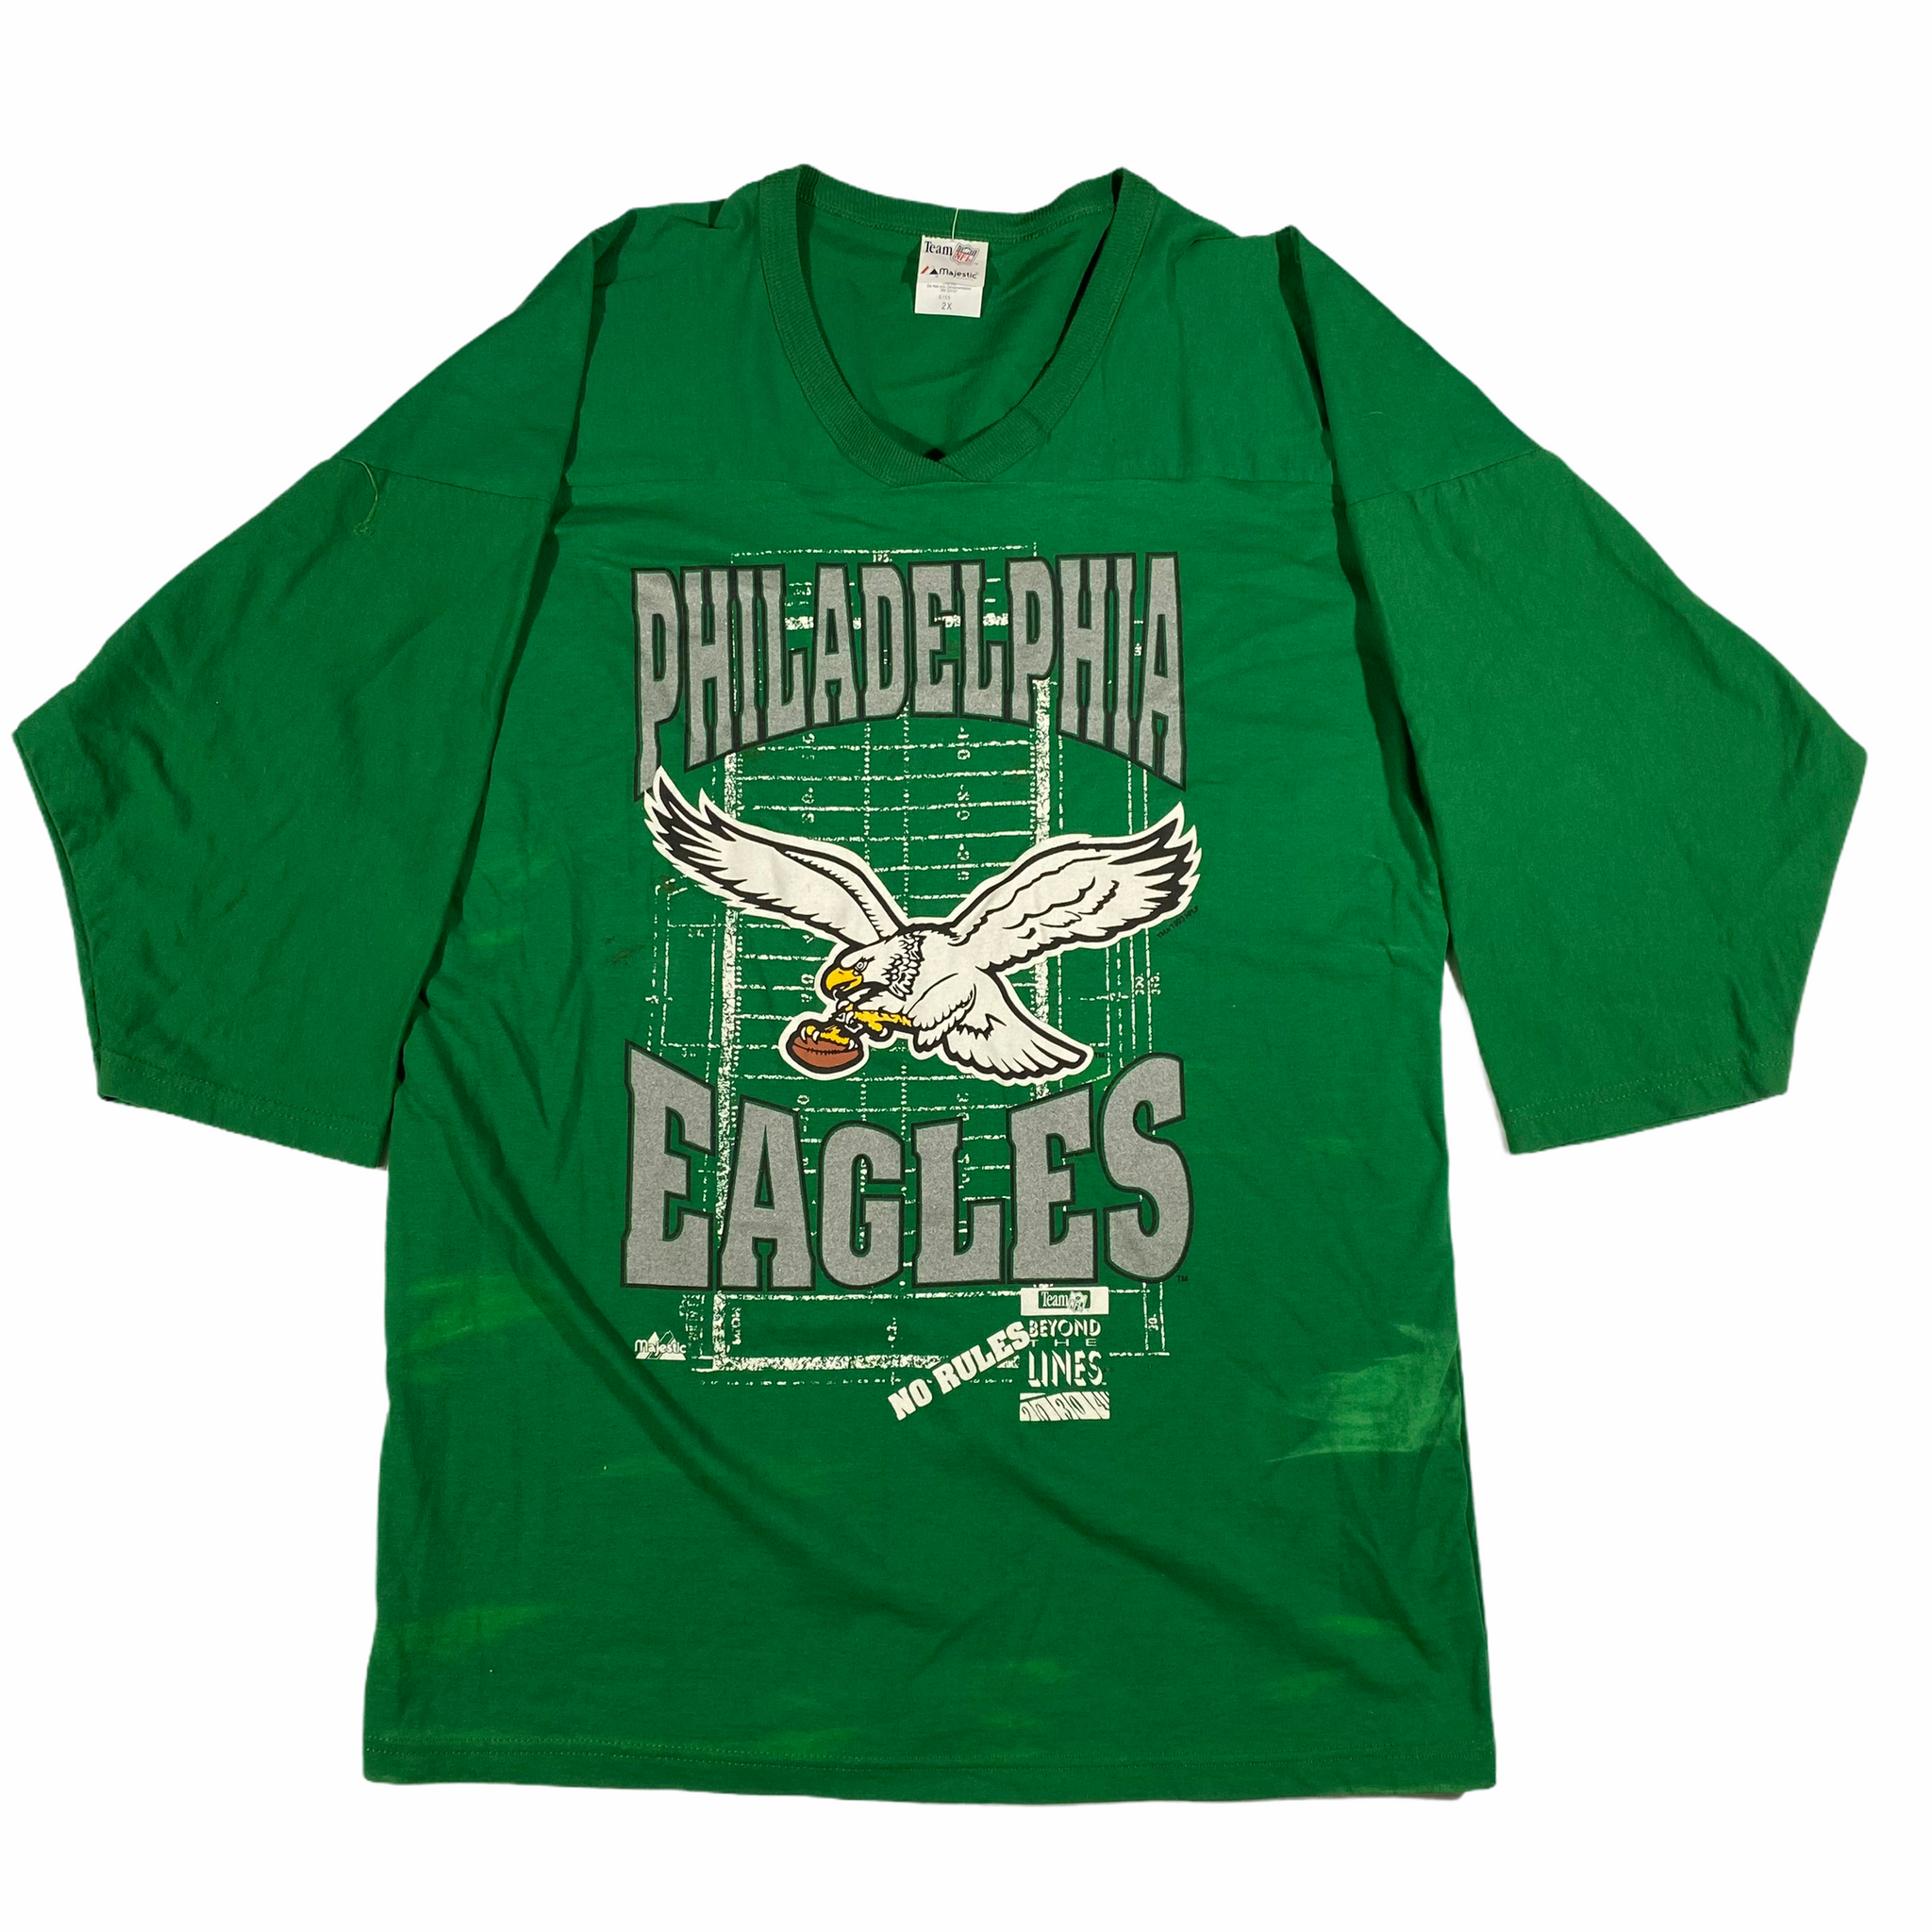 90s Vintage Philadelphia Eagles Sweatshirt